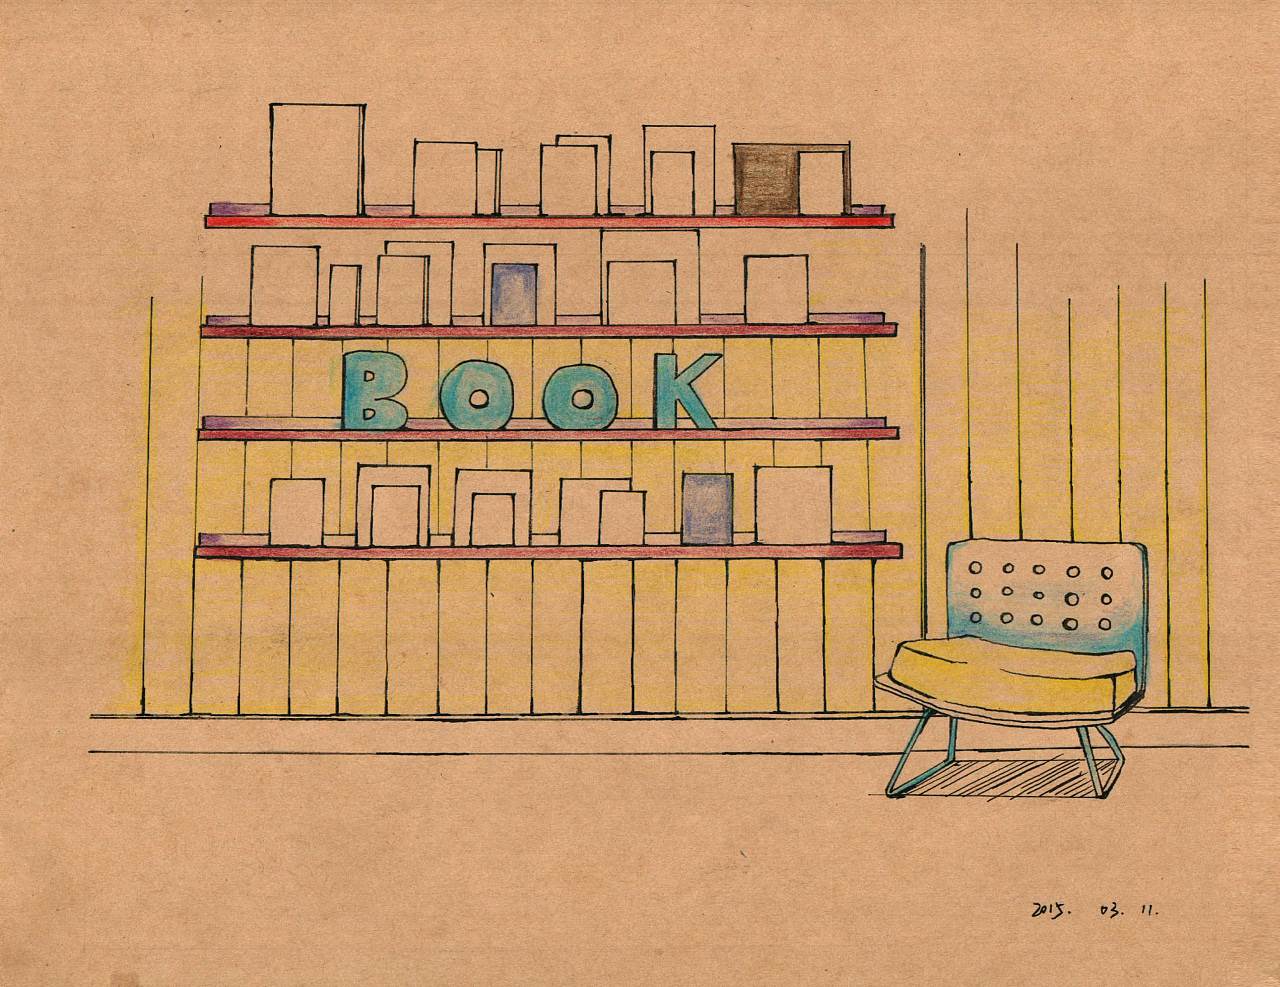 画一个书房简笔画图片